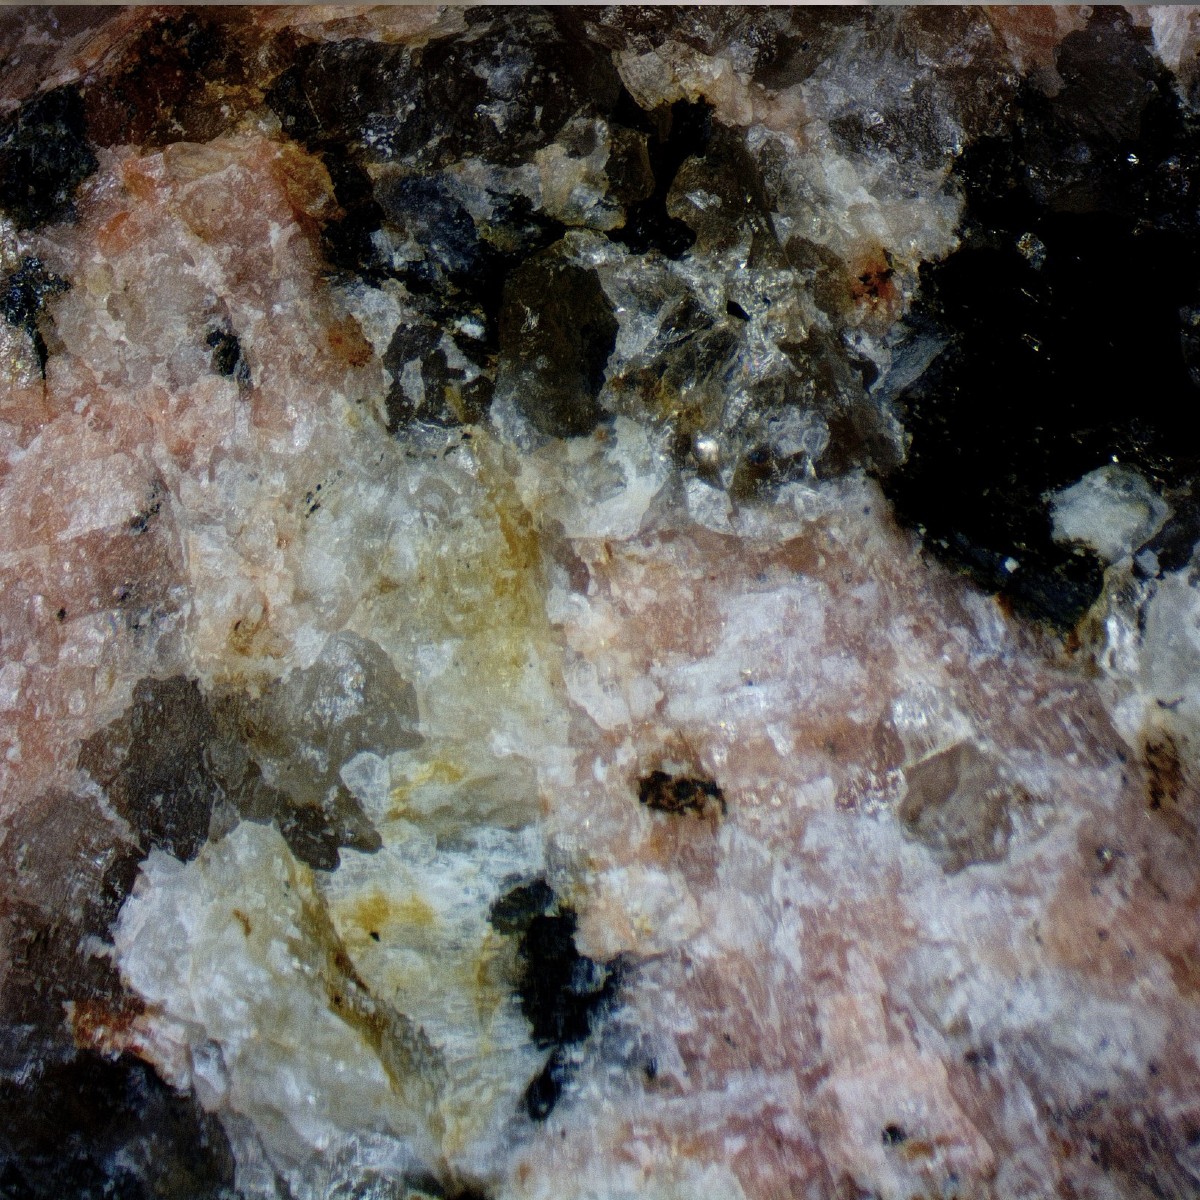 pegmatite intrusive plutonic rock